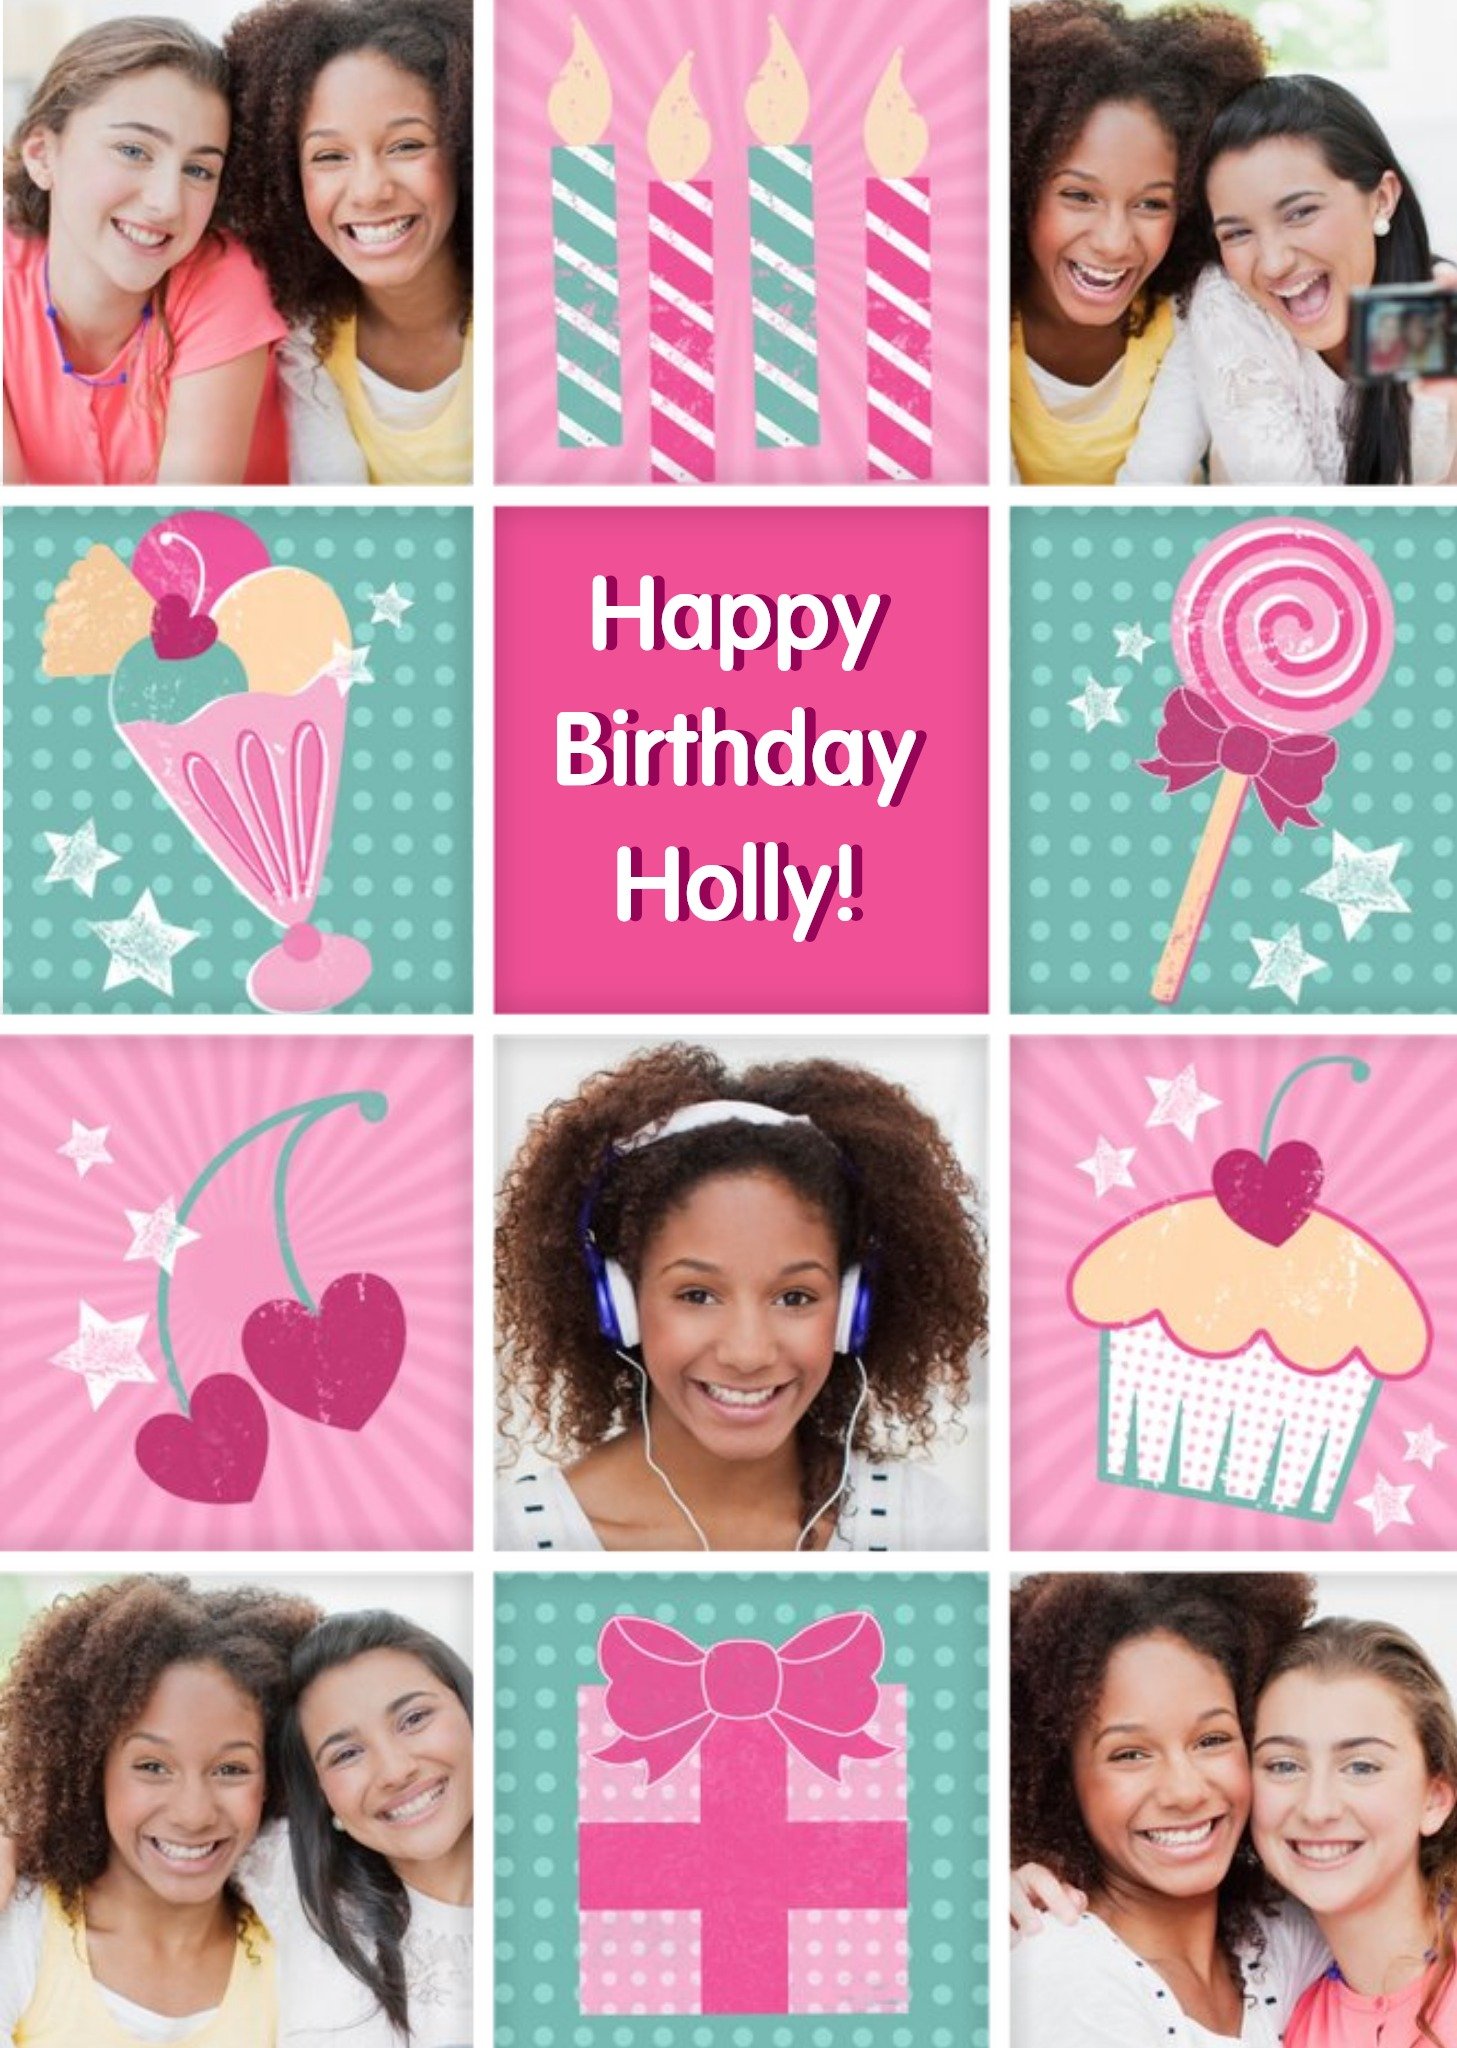 Moonpig Girly Ice Cream Sundae Grid Personalised Photo Upload Happy Birthday Card, Large